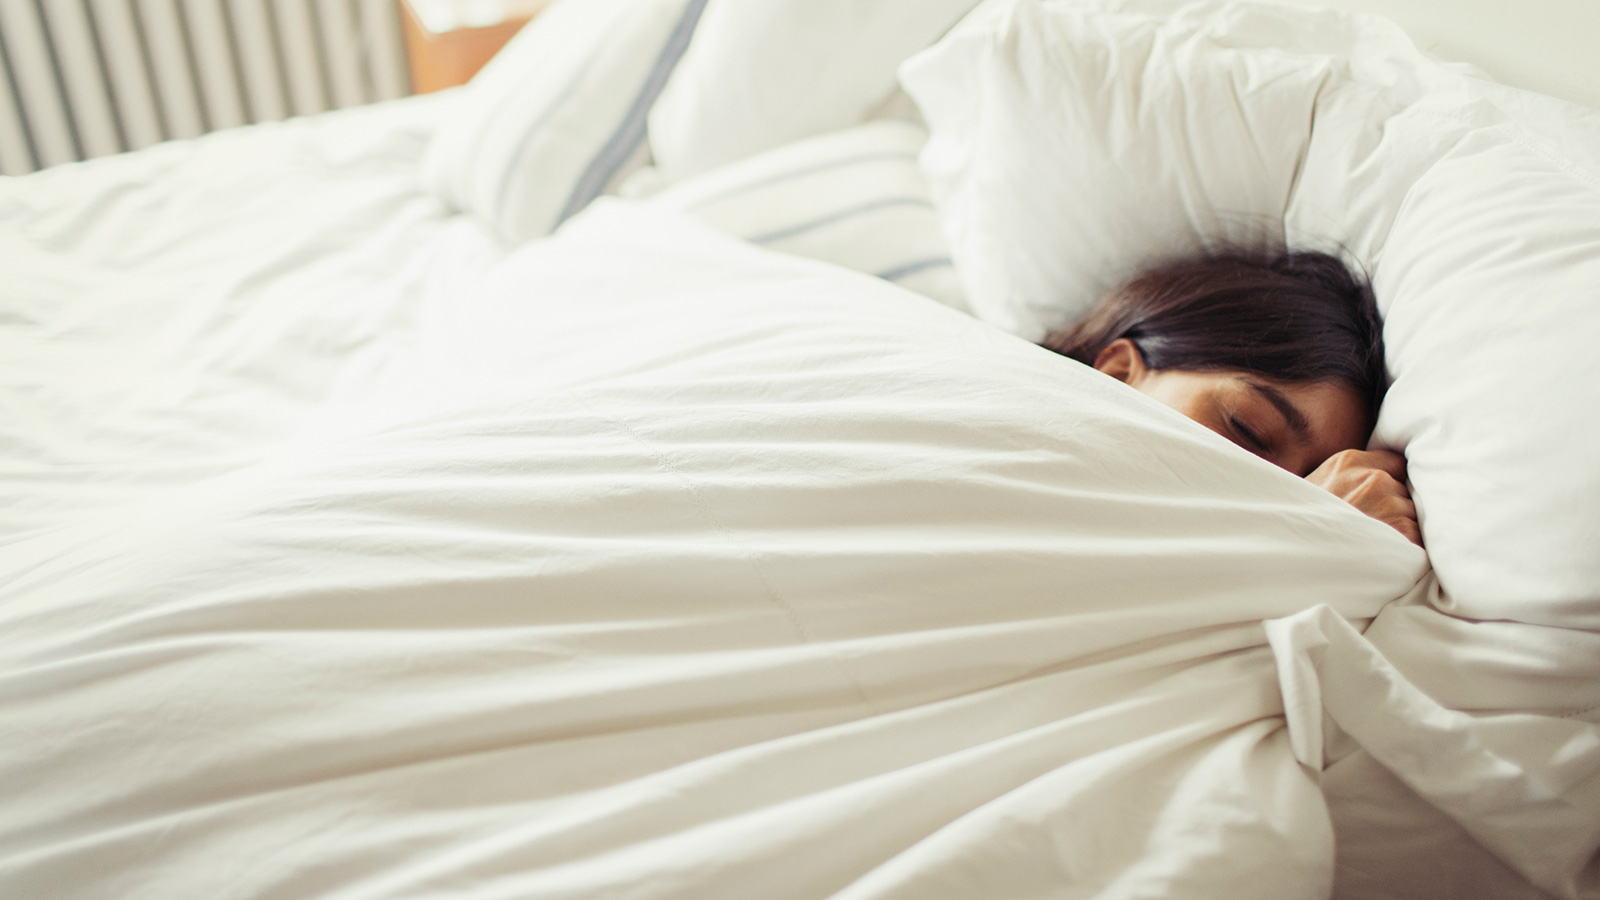 ‪تنظيم النوم بمعدل يتراوح بين سبع وثماني ساعات في اليوم يقلل التوتر‬ (غيتي إيميجز)